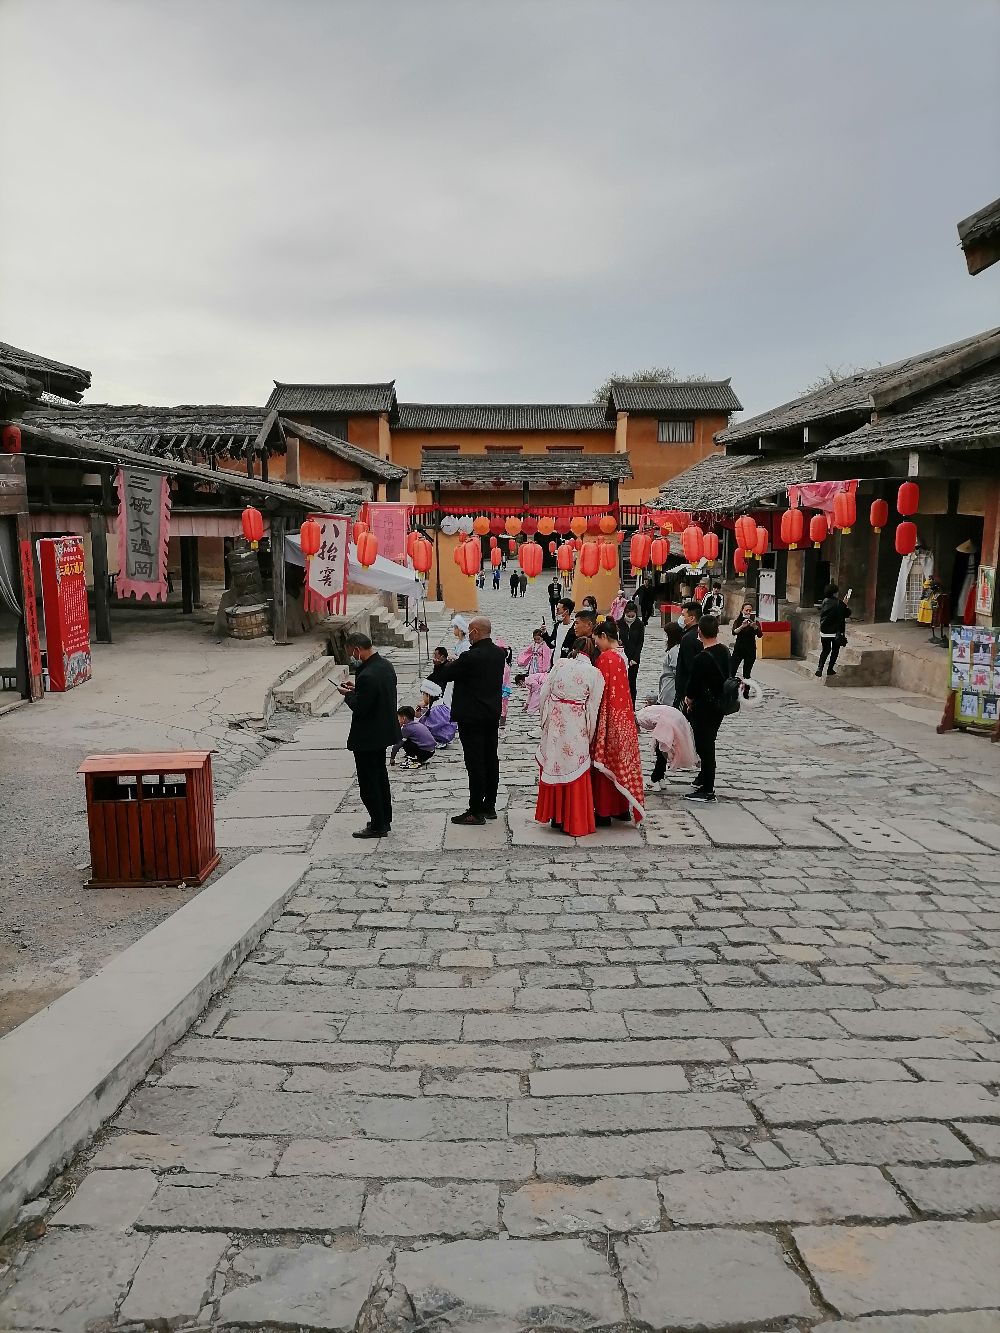 焦作影视城位于河南省焦作市，这里是拍摄新水浒传和三国演义的地方。